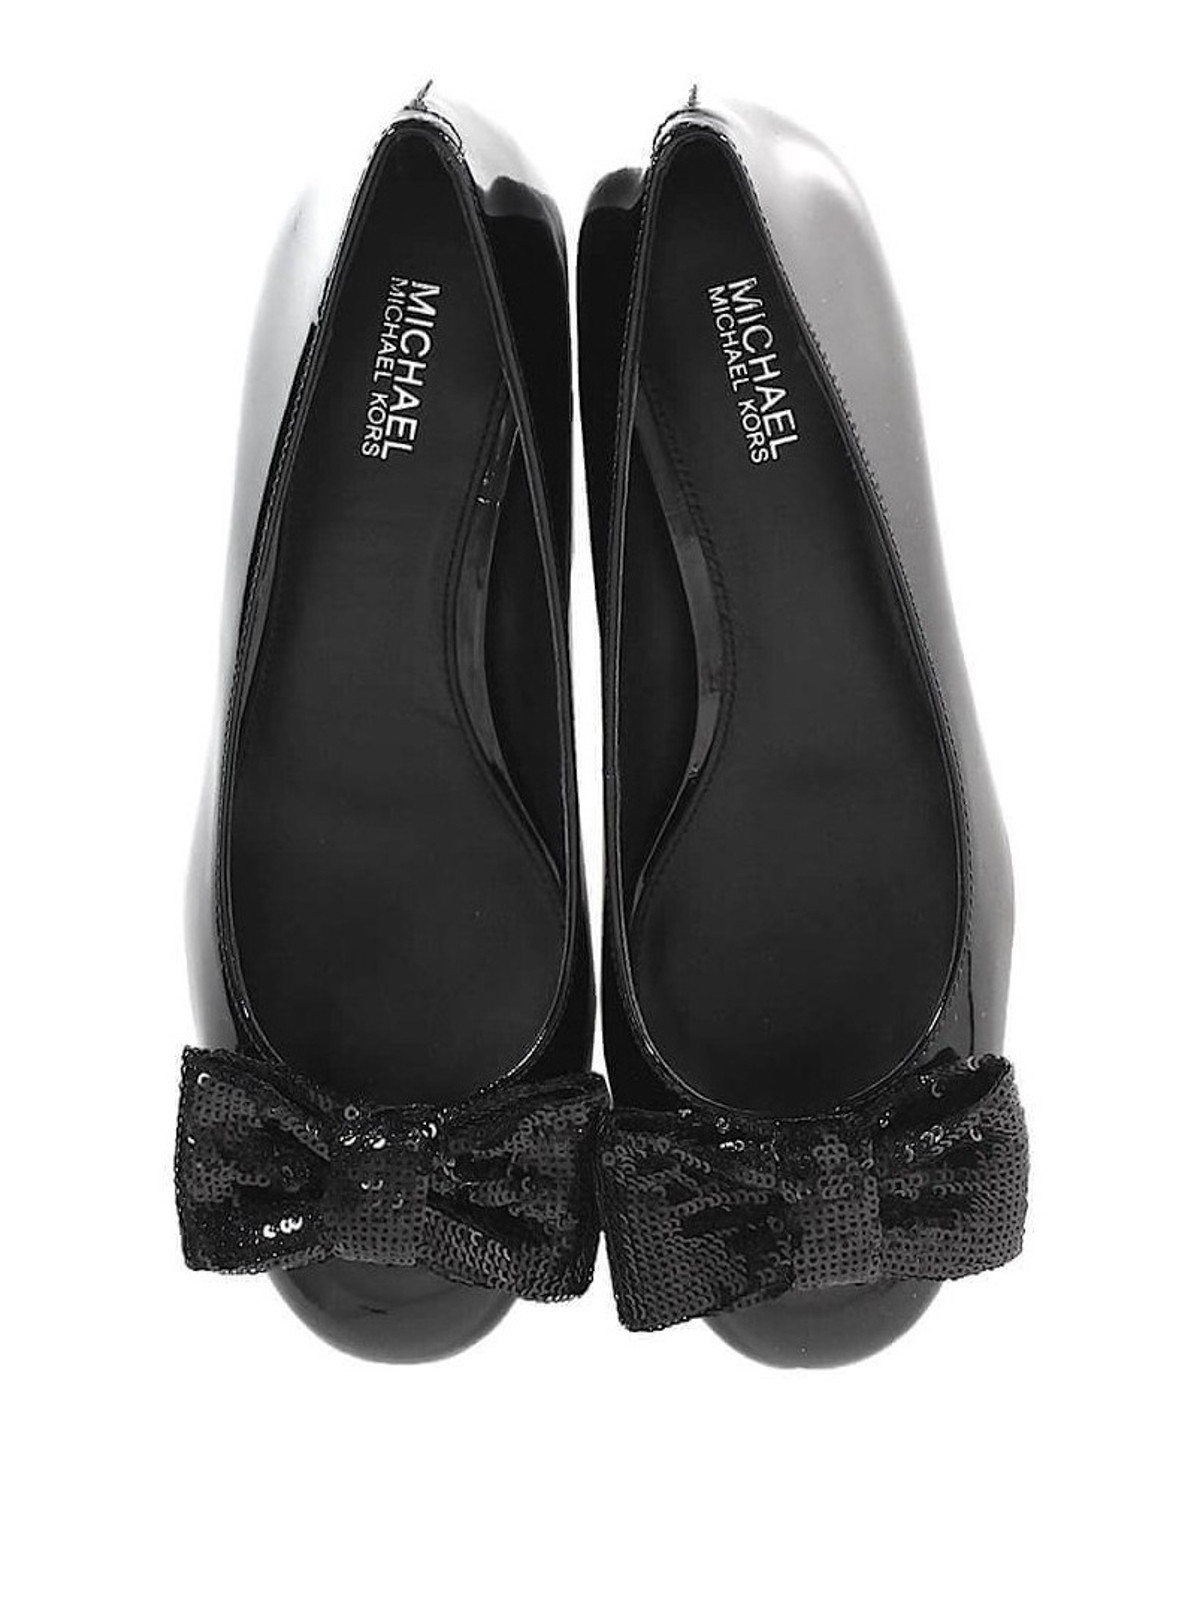 Court shoes Michael Kors - Paris sequined bow pumps - 40R8PRMP1A001